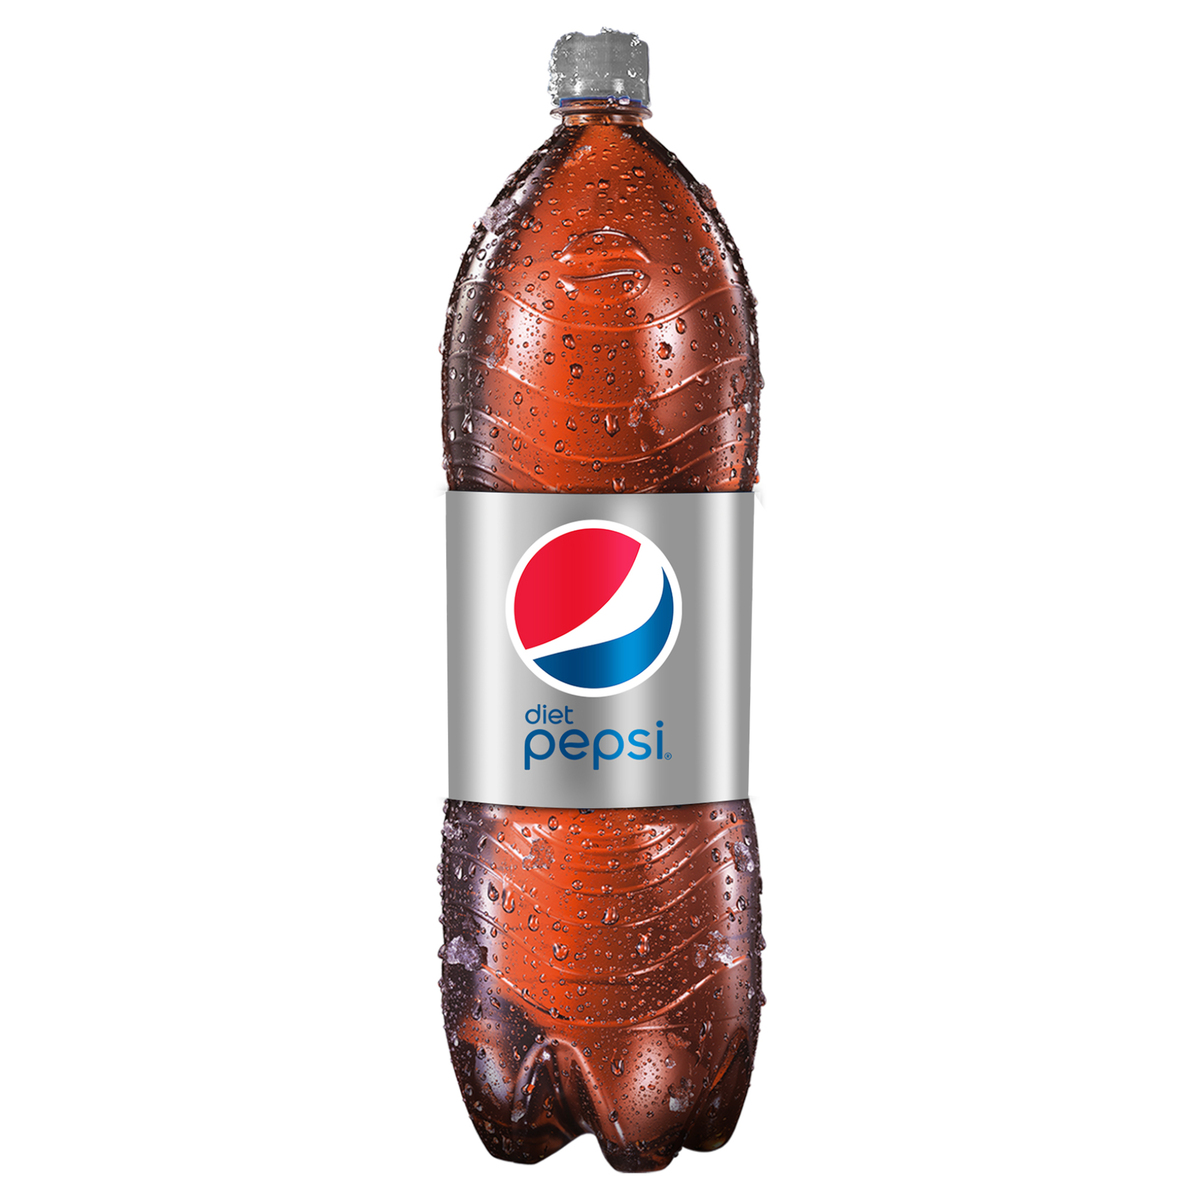 اشتري قم بشراء بيبسي دايت علبة 1 لتر Online at Best Price من الموقع - من لولو هايبر ماركت Cola Bottle في السعودية